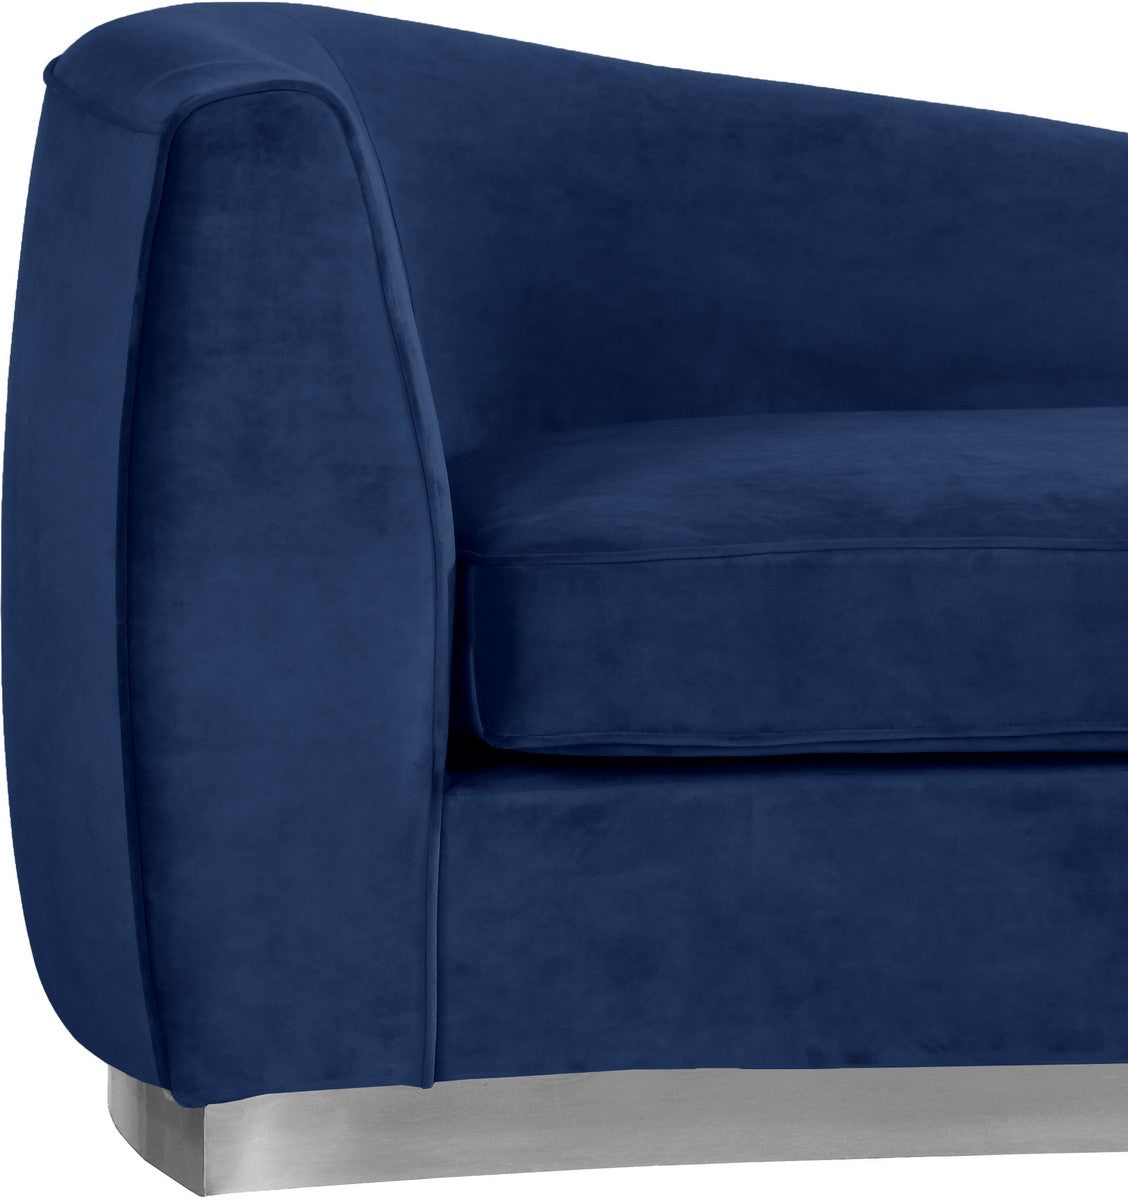 Meridian Furniture Julian Navy Velvet Chaise